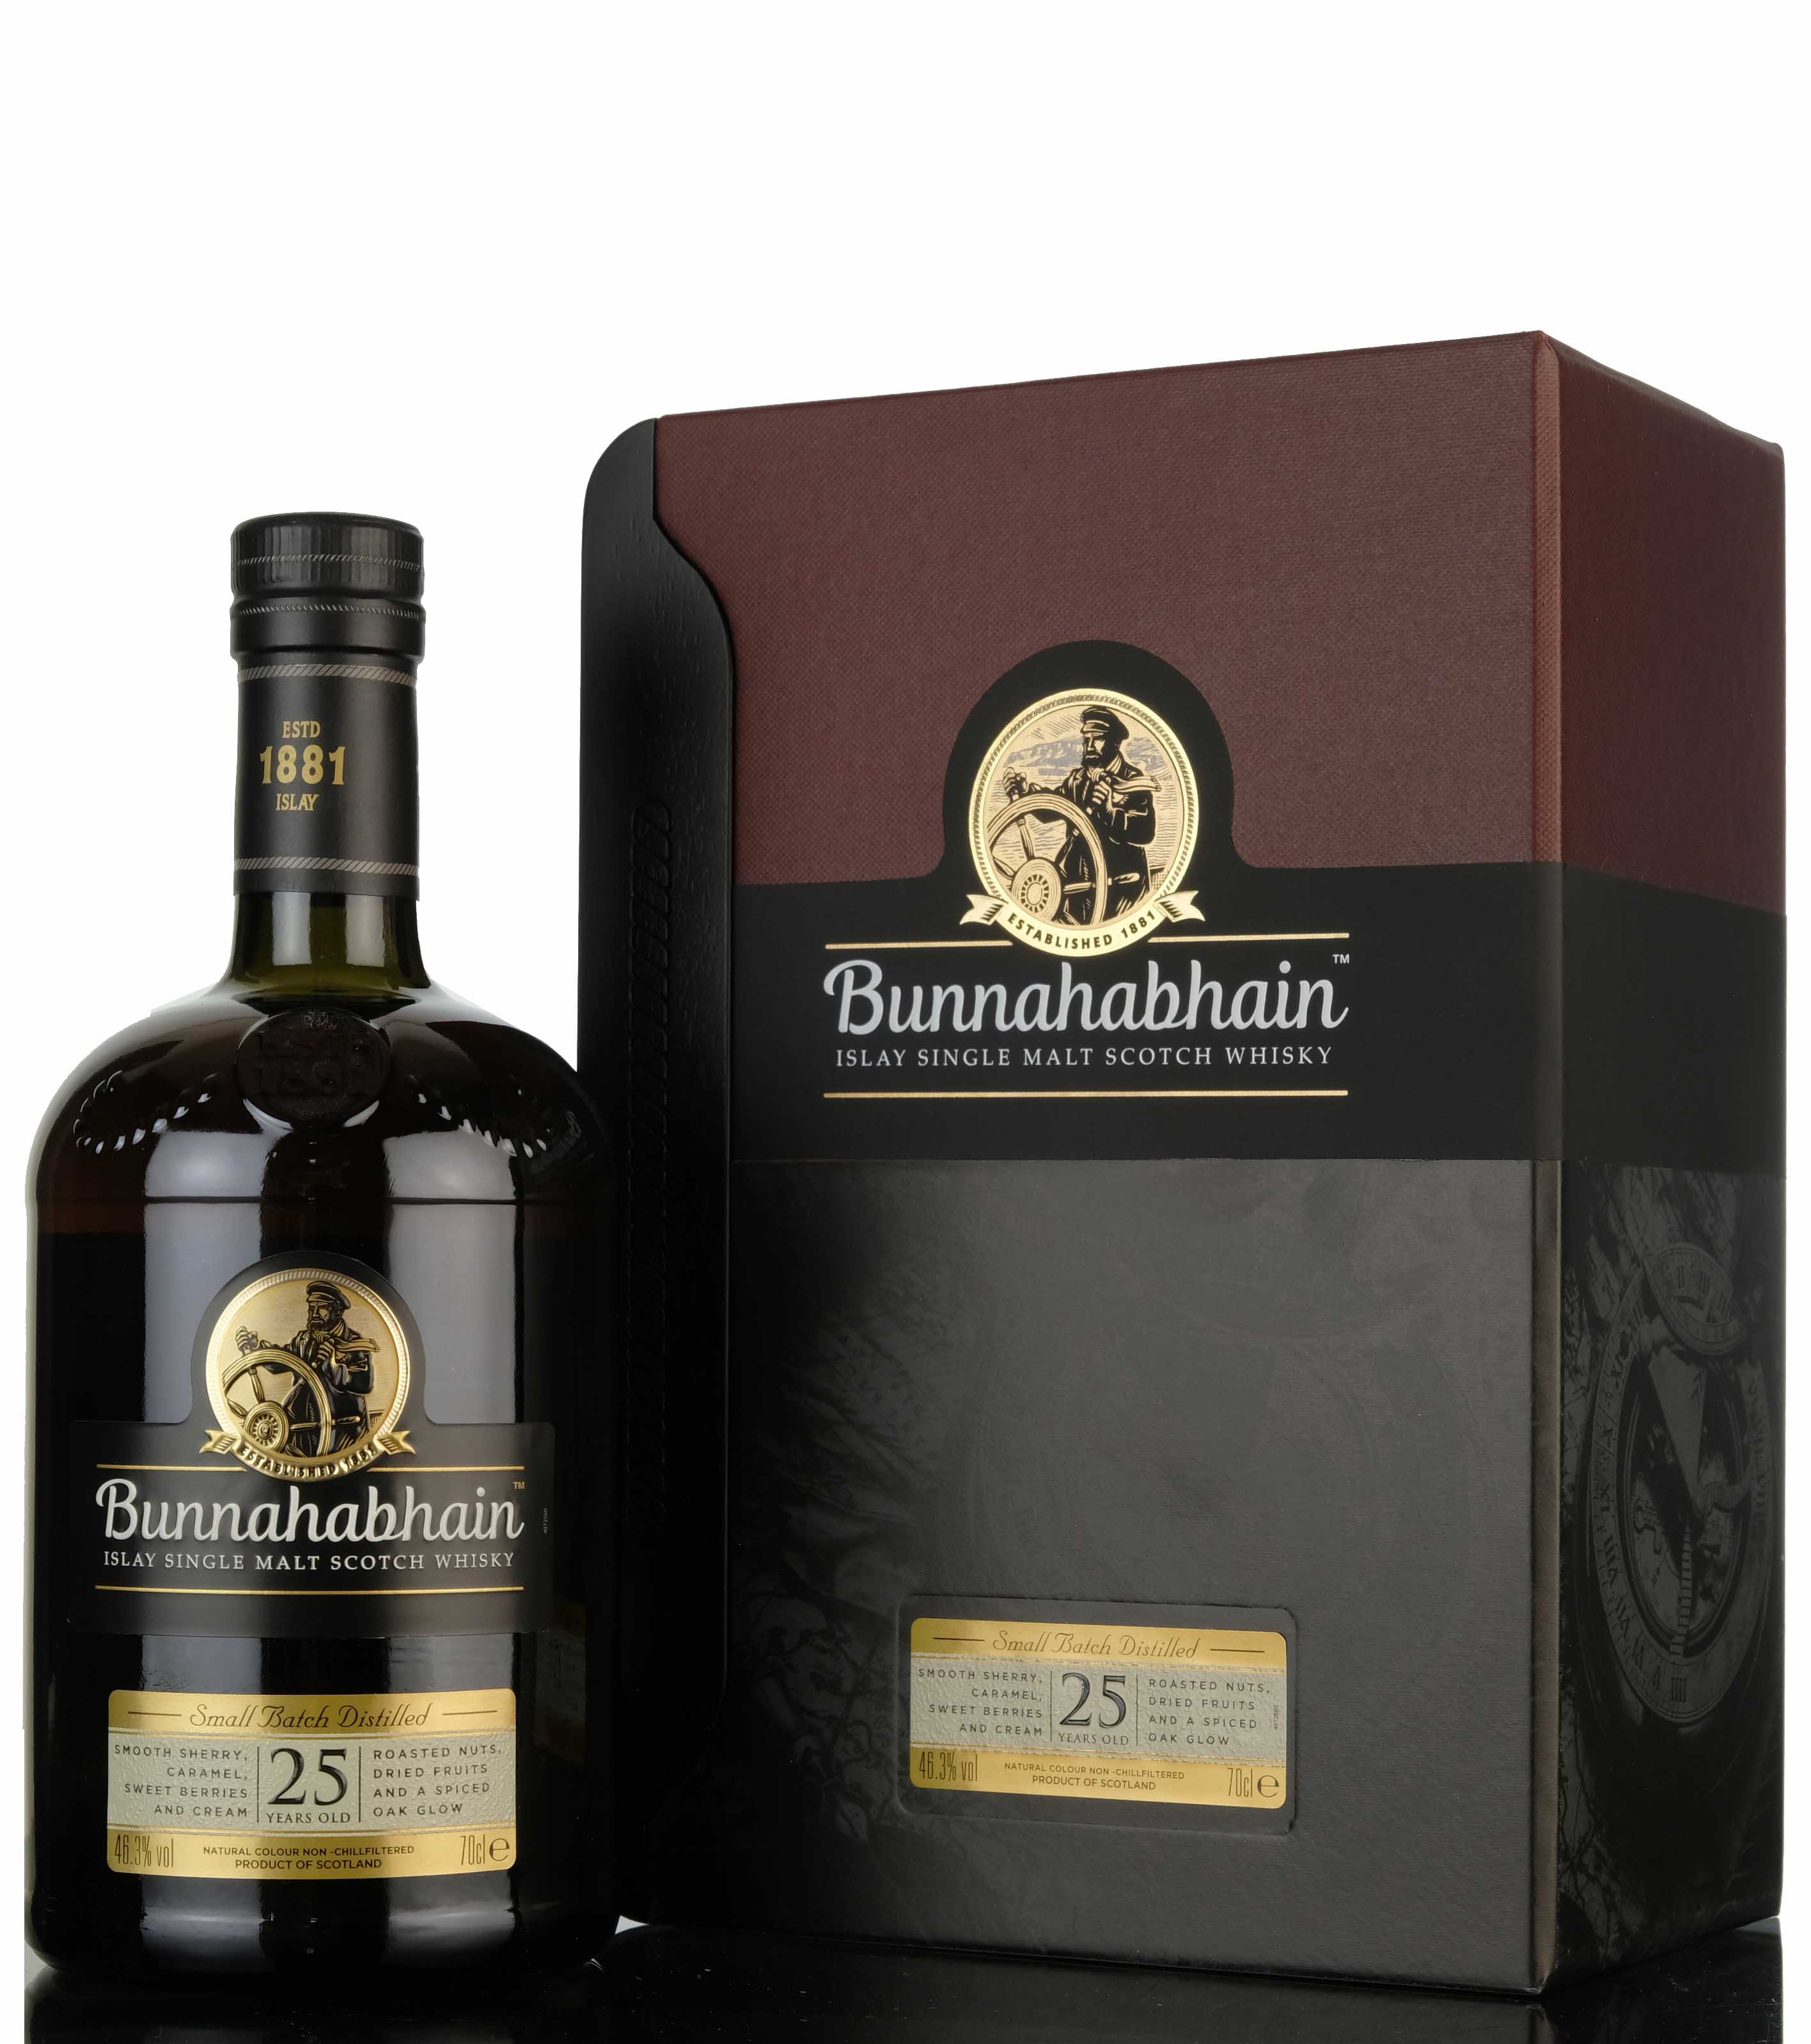 Bunnahabhain 25 Year Old - Small Batch Distilled